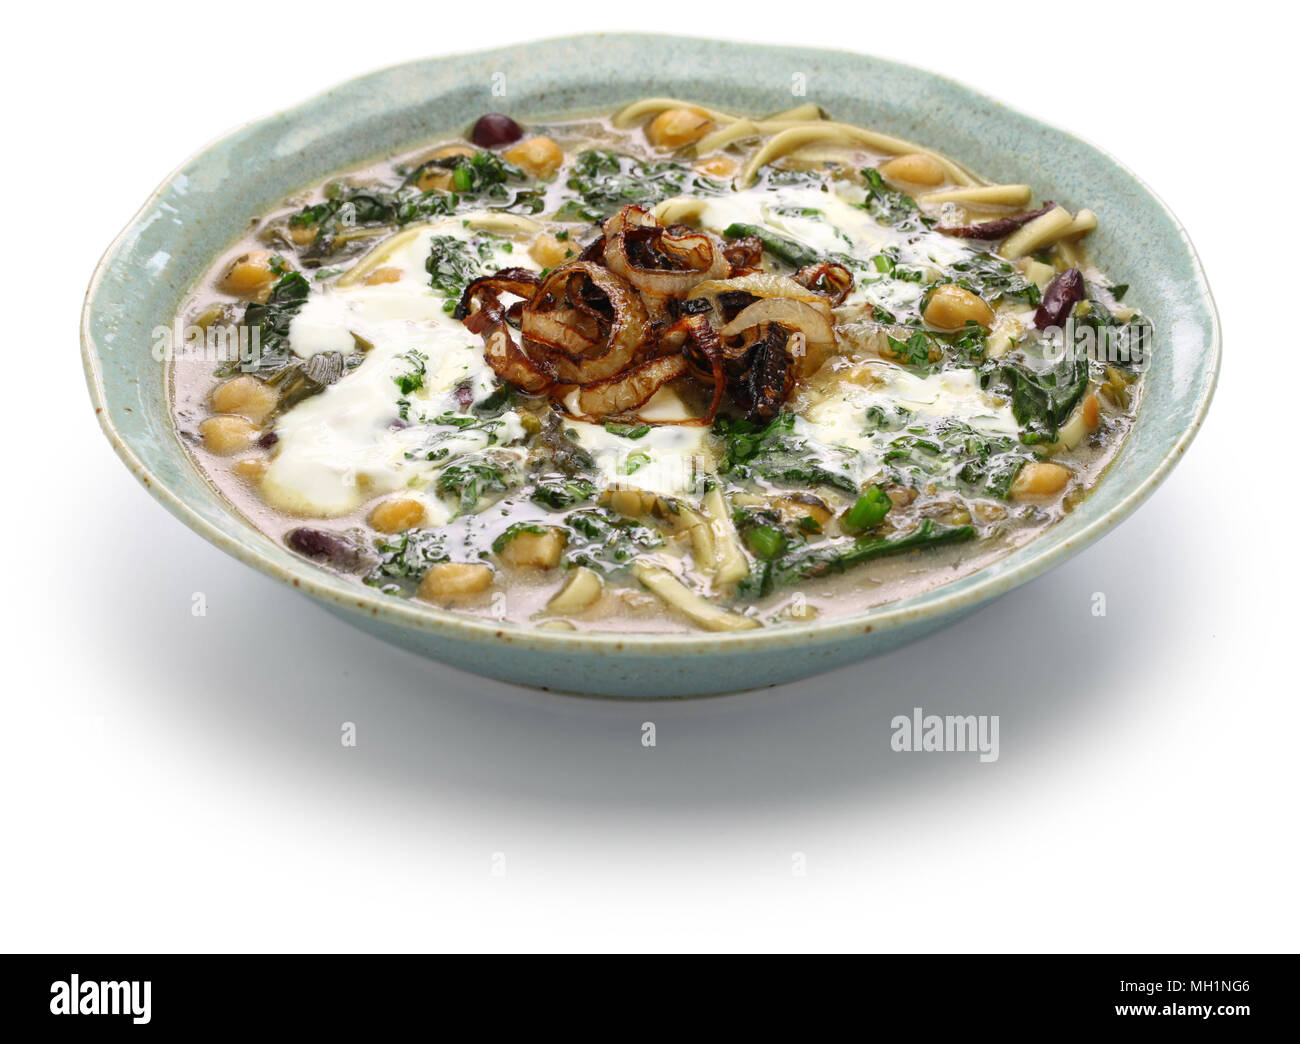 Ceneri reshteh, persiano nuovi anni noodle soup Foto Stock